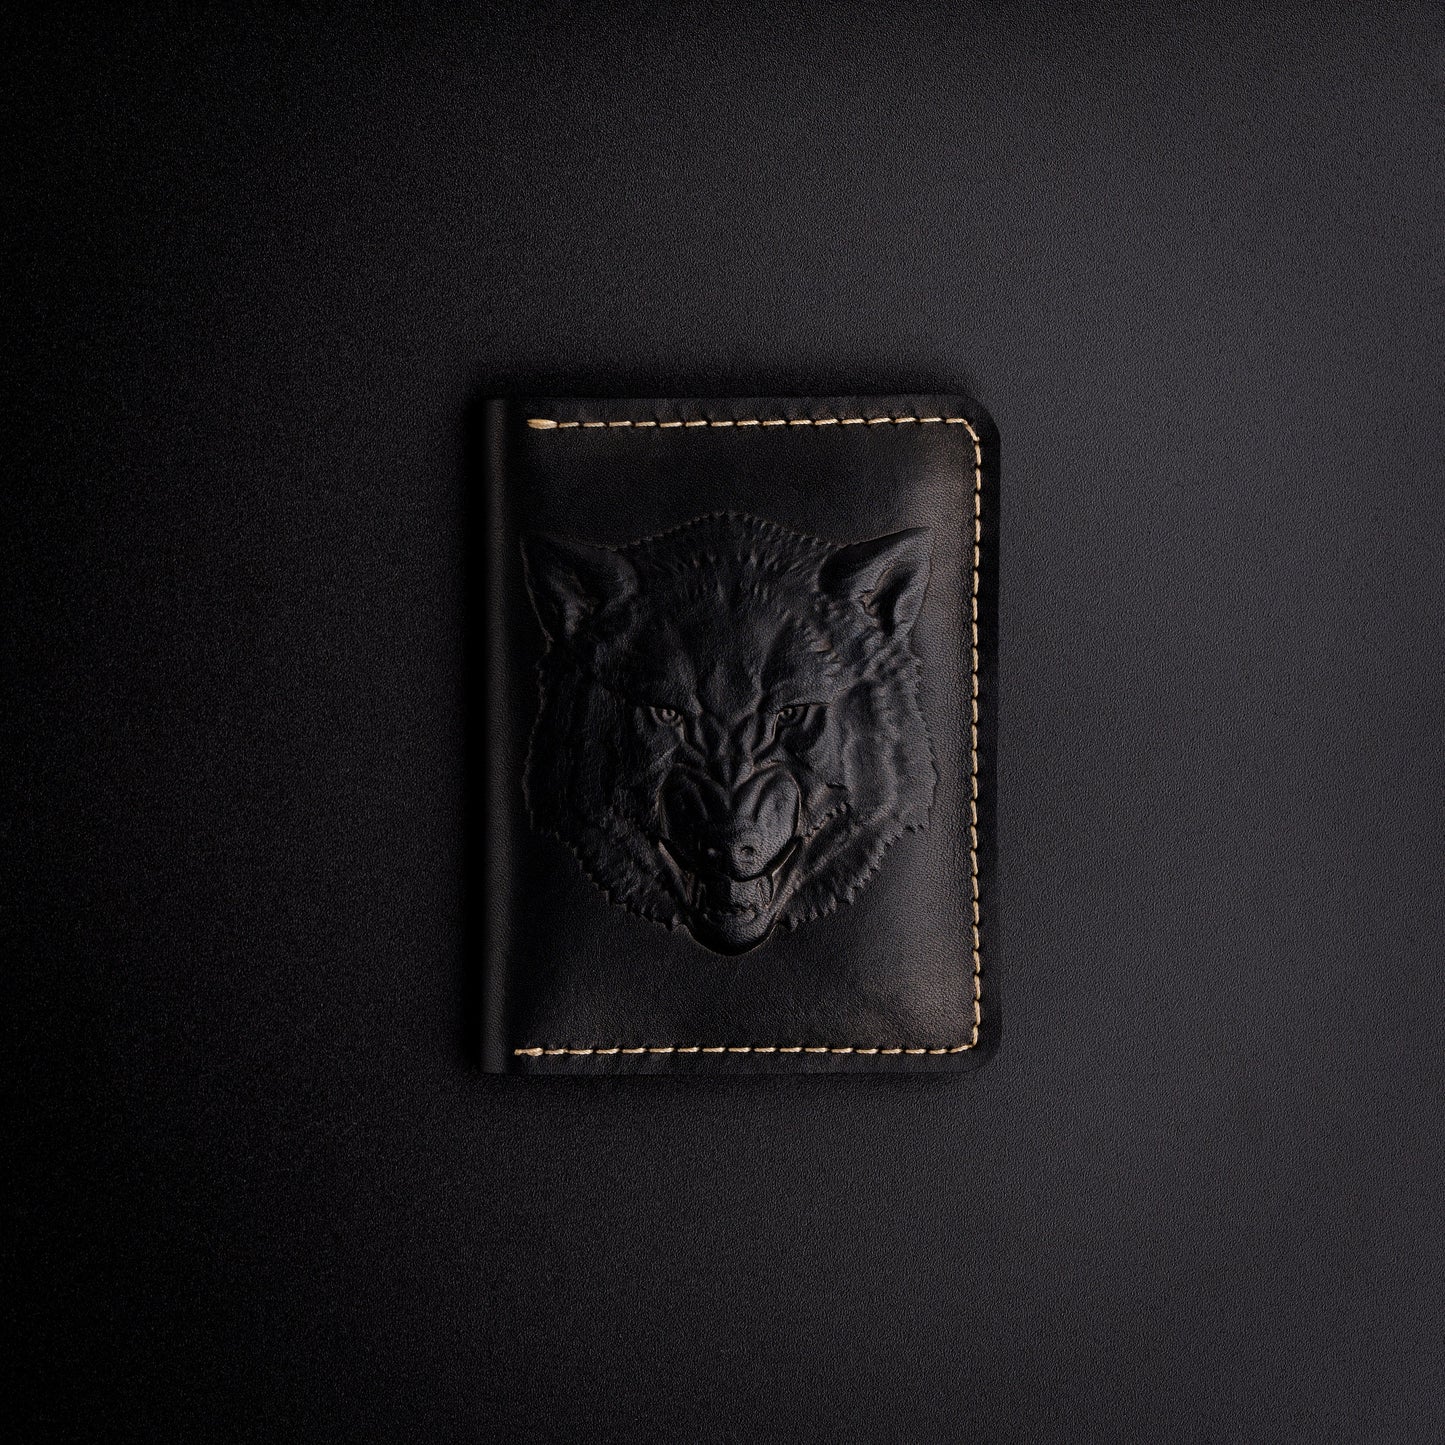 Leather Card Holder Wallet, Travel Card Holder, Ultra Slim Card Holder with Minimalist Design, Unisex Credit Card Wallet